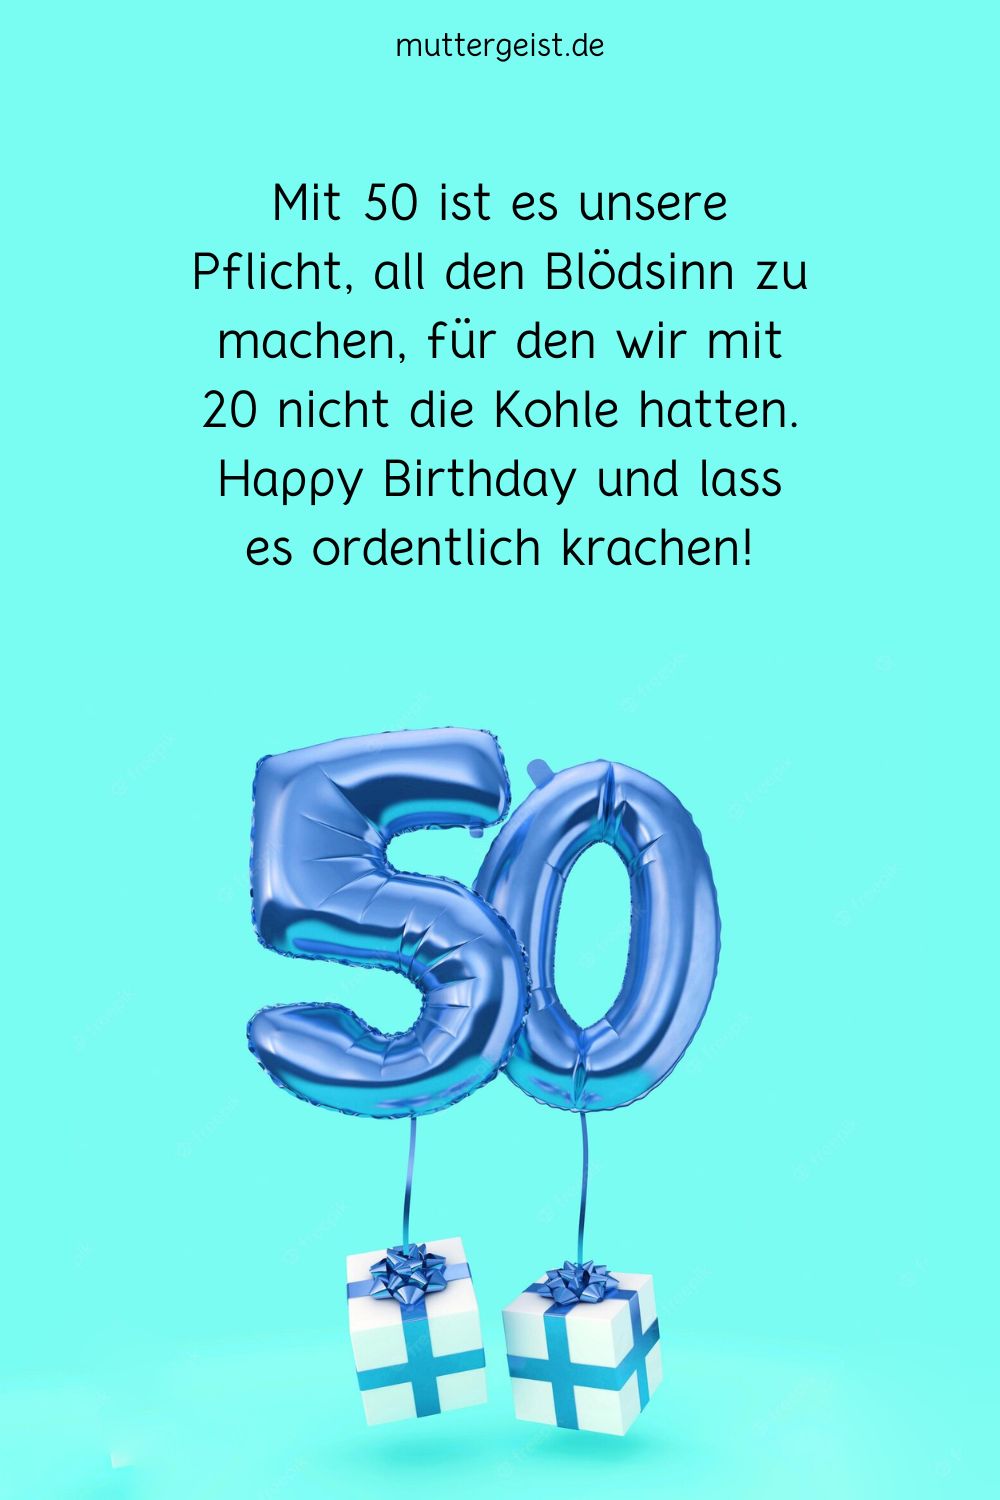 „Mit 50 ist es unsere Pflicht, all den Blödsinn zu machen, für den wir mit 20 nicht die Kohle hatten. Happy Birthday und lass es ordentlich krachen!“